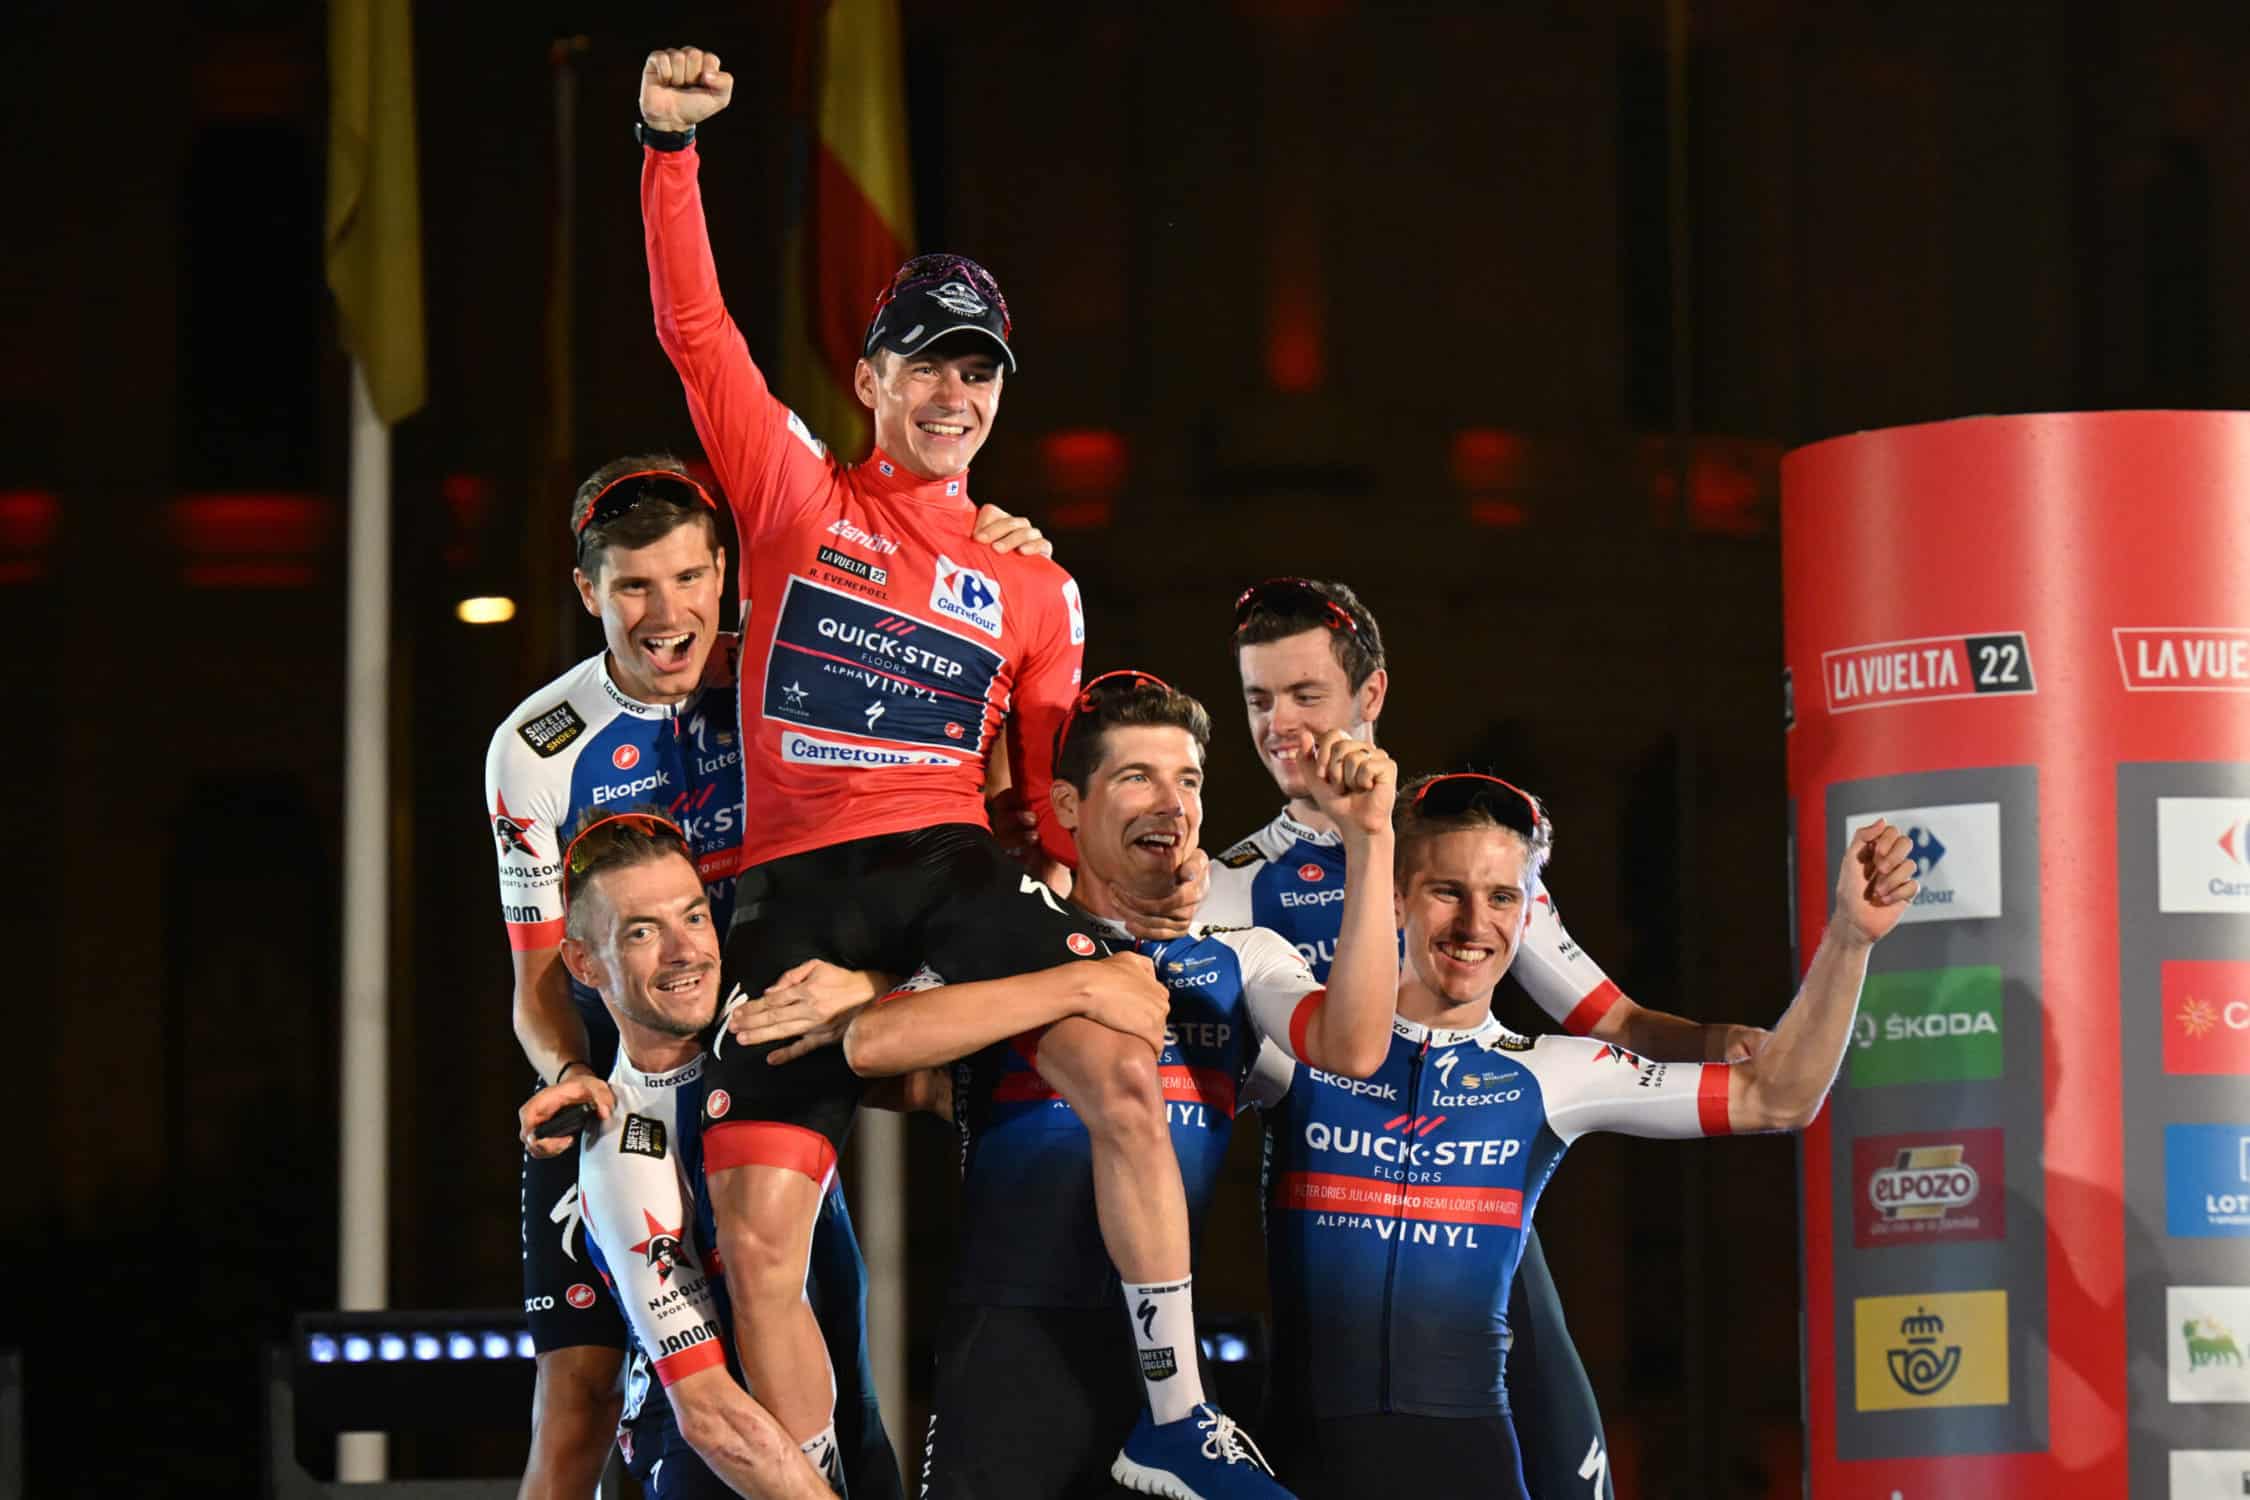 Remco Evenepoel won the 2022 Vuelta Espana